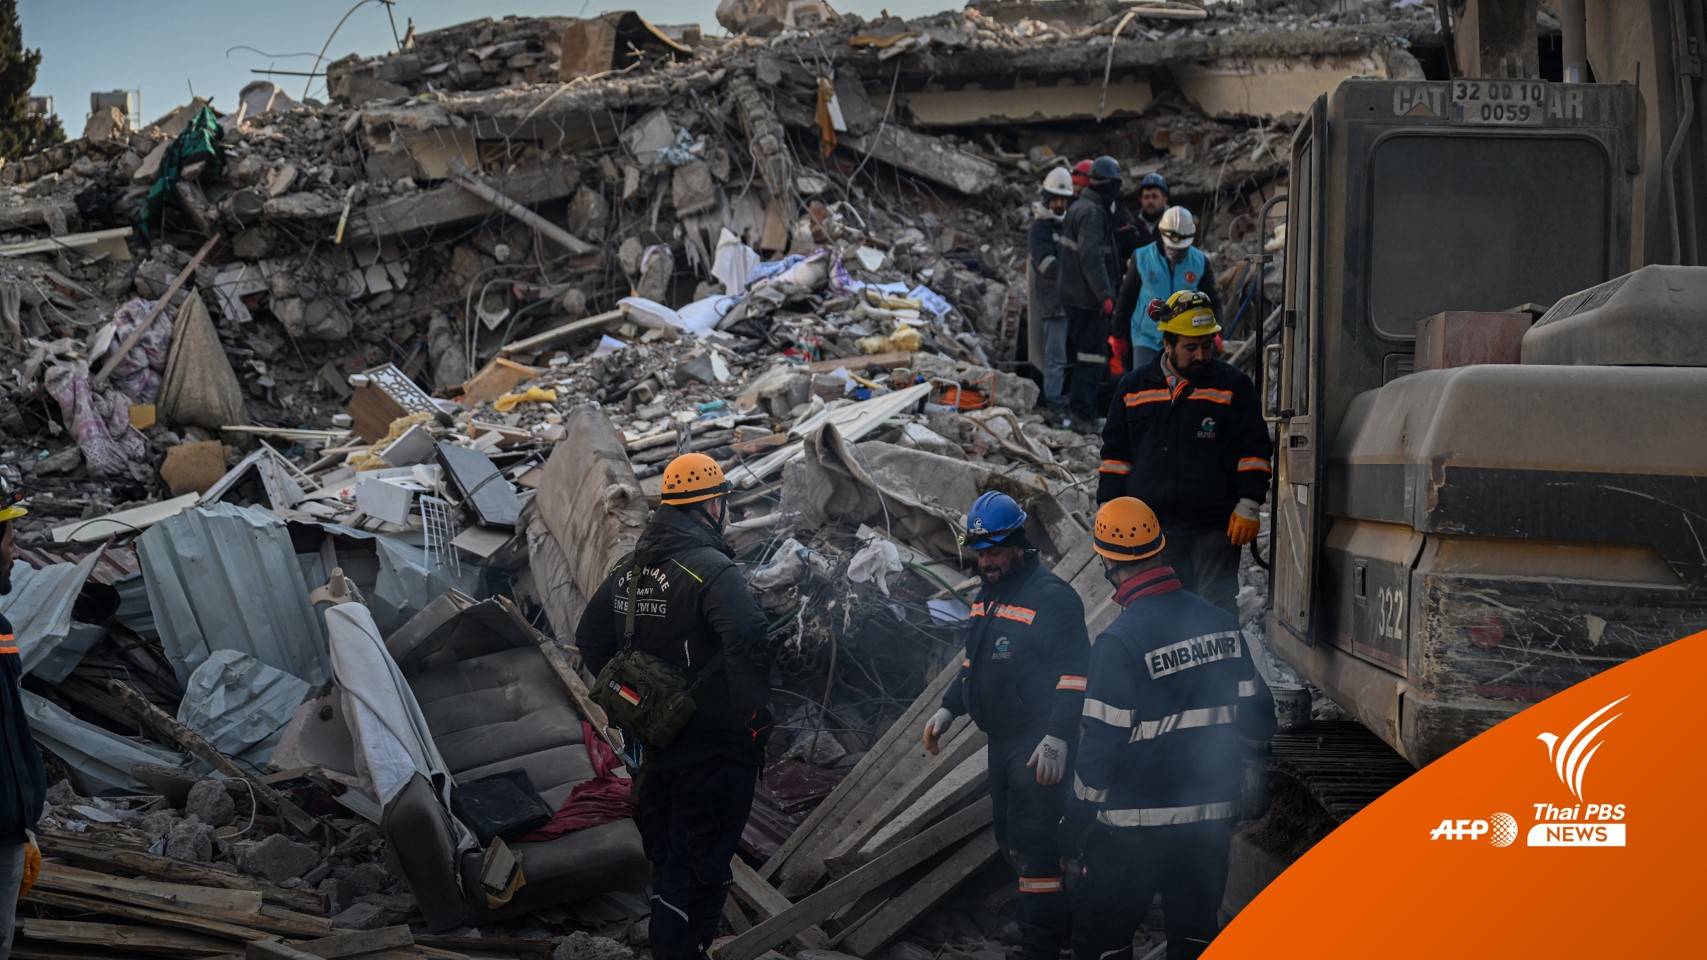 ยอดเสียชีวิตแผ่นดินไหวแตะ 34,000 คน ตุรกีเจอเหตุปล้นสะดม